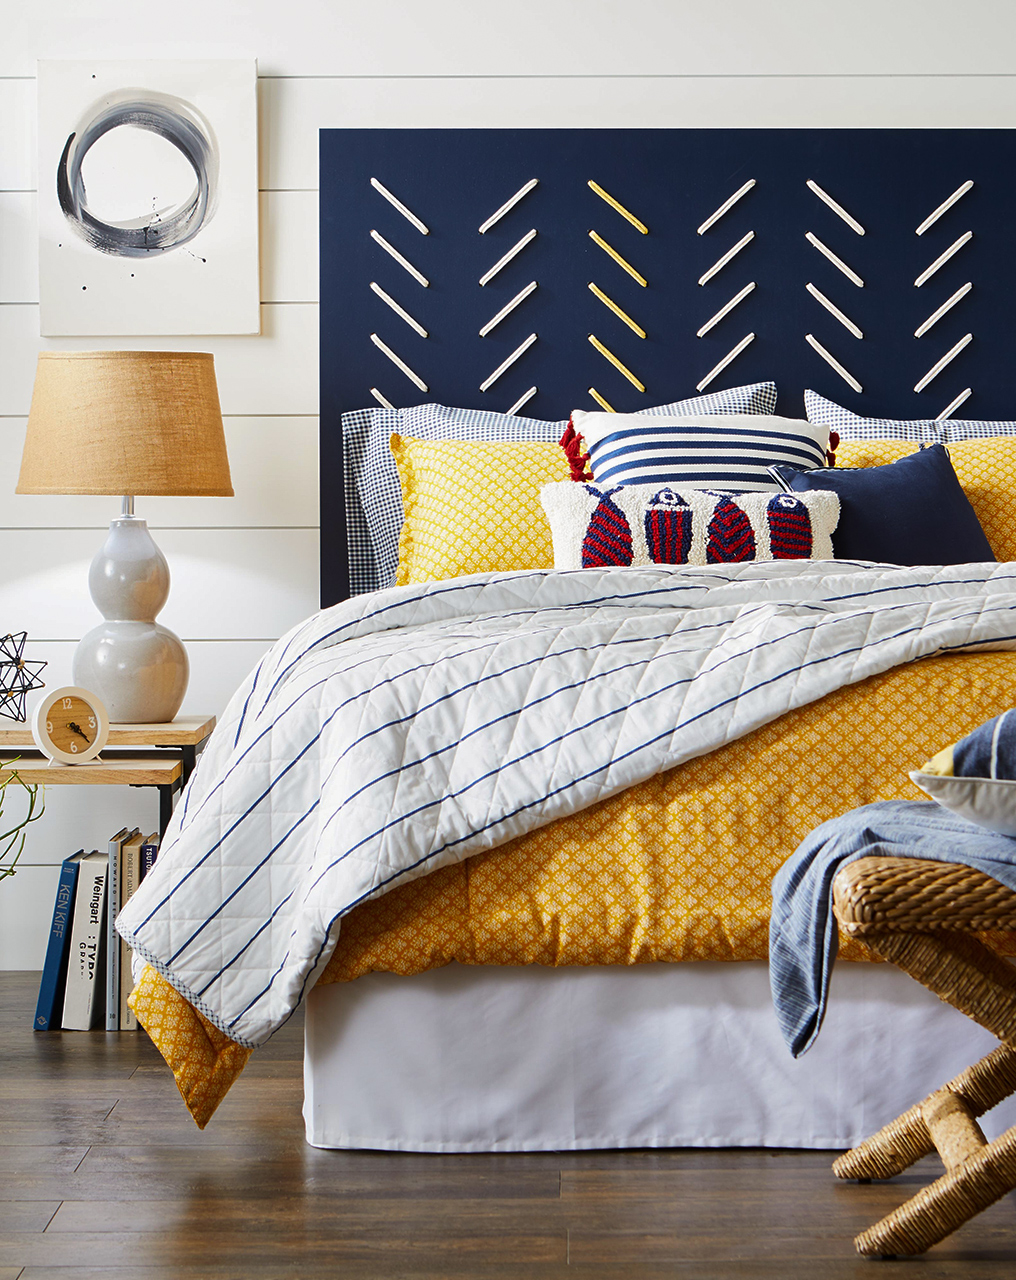 Đầu giường màu xanh coban với những đường thêu kiểu họa tiết xương cá mang lại cho không gian phòng ngủ nhỏ một cái nhìn bắt mắt, bên cạnh những gam màu tươi sáng như vàng, đỏ,...